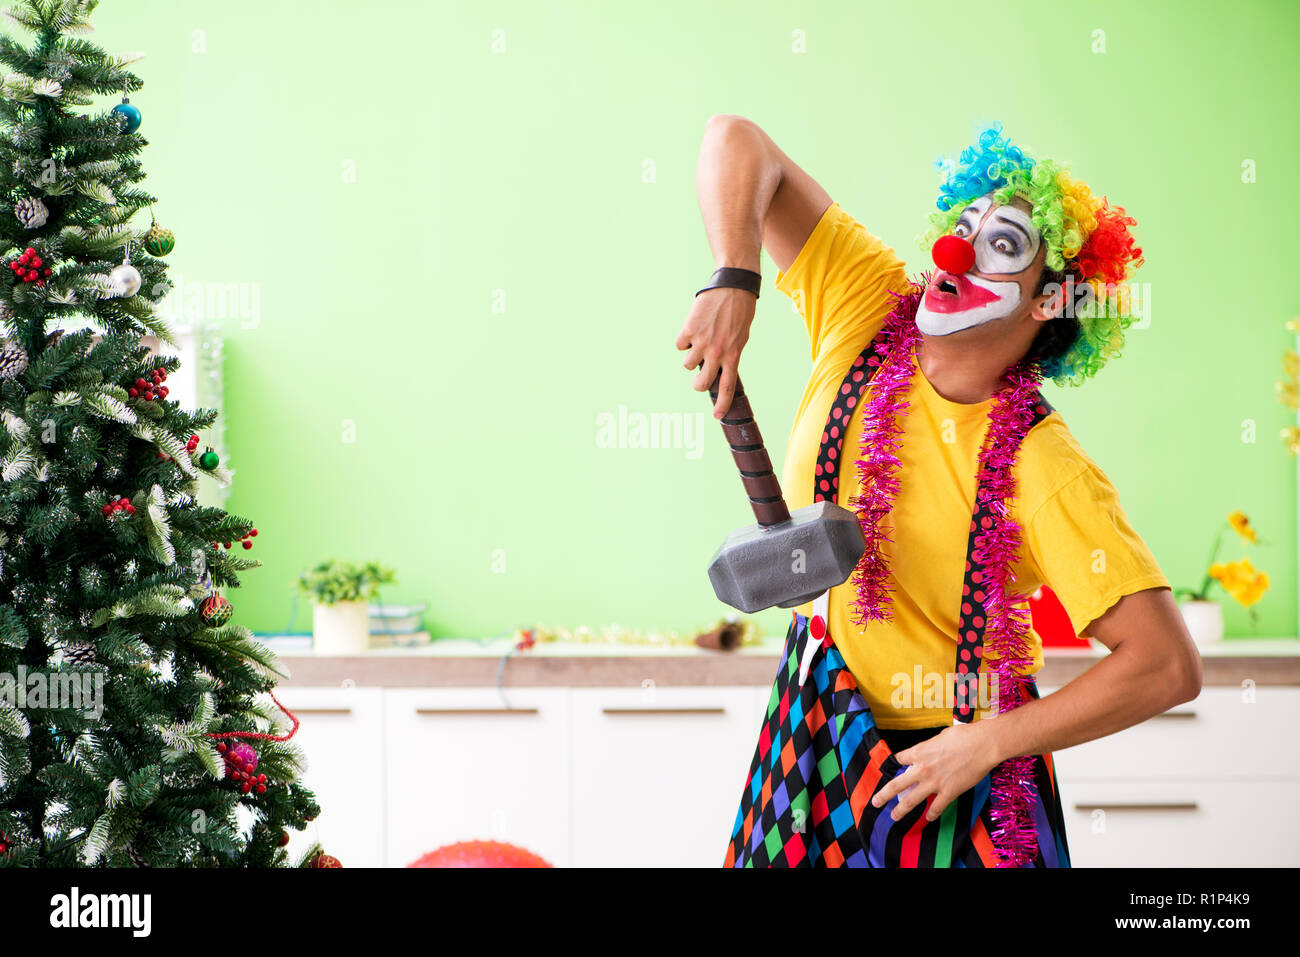 Lustige Clown In Weihnachtsfeier Konzept Stockfotografie Alamy